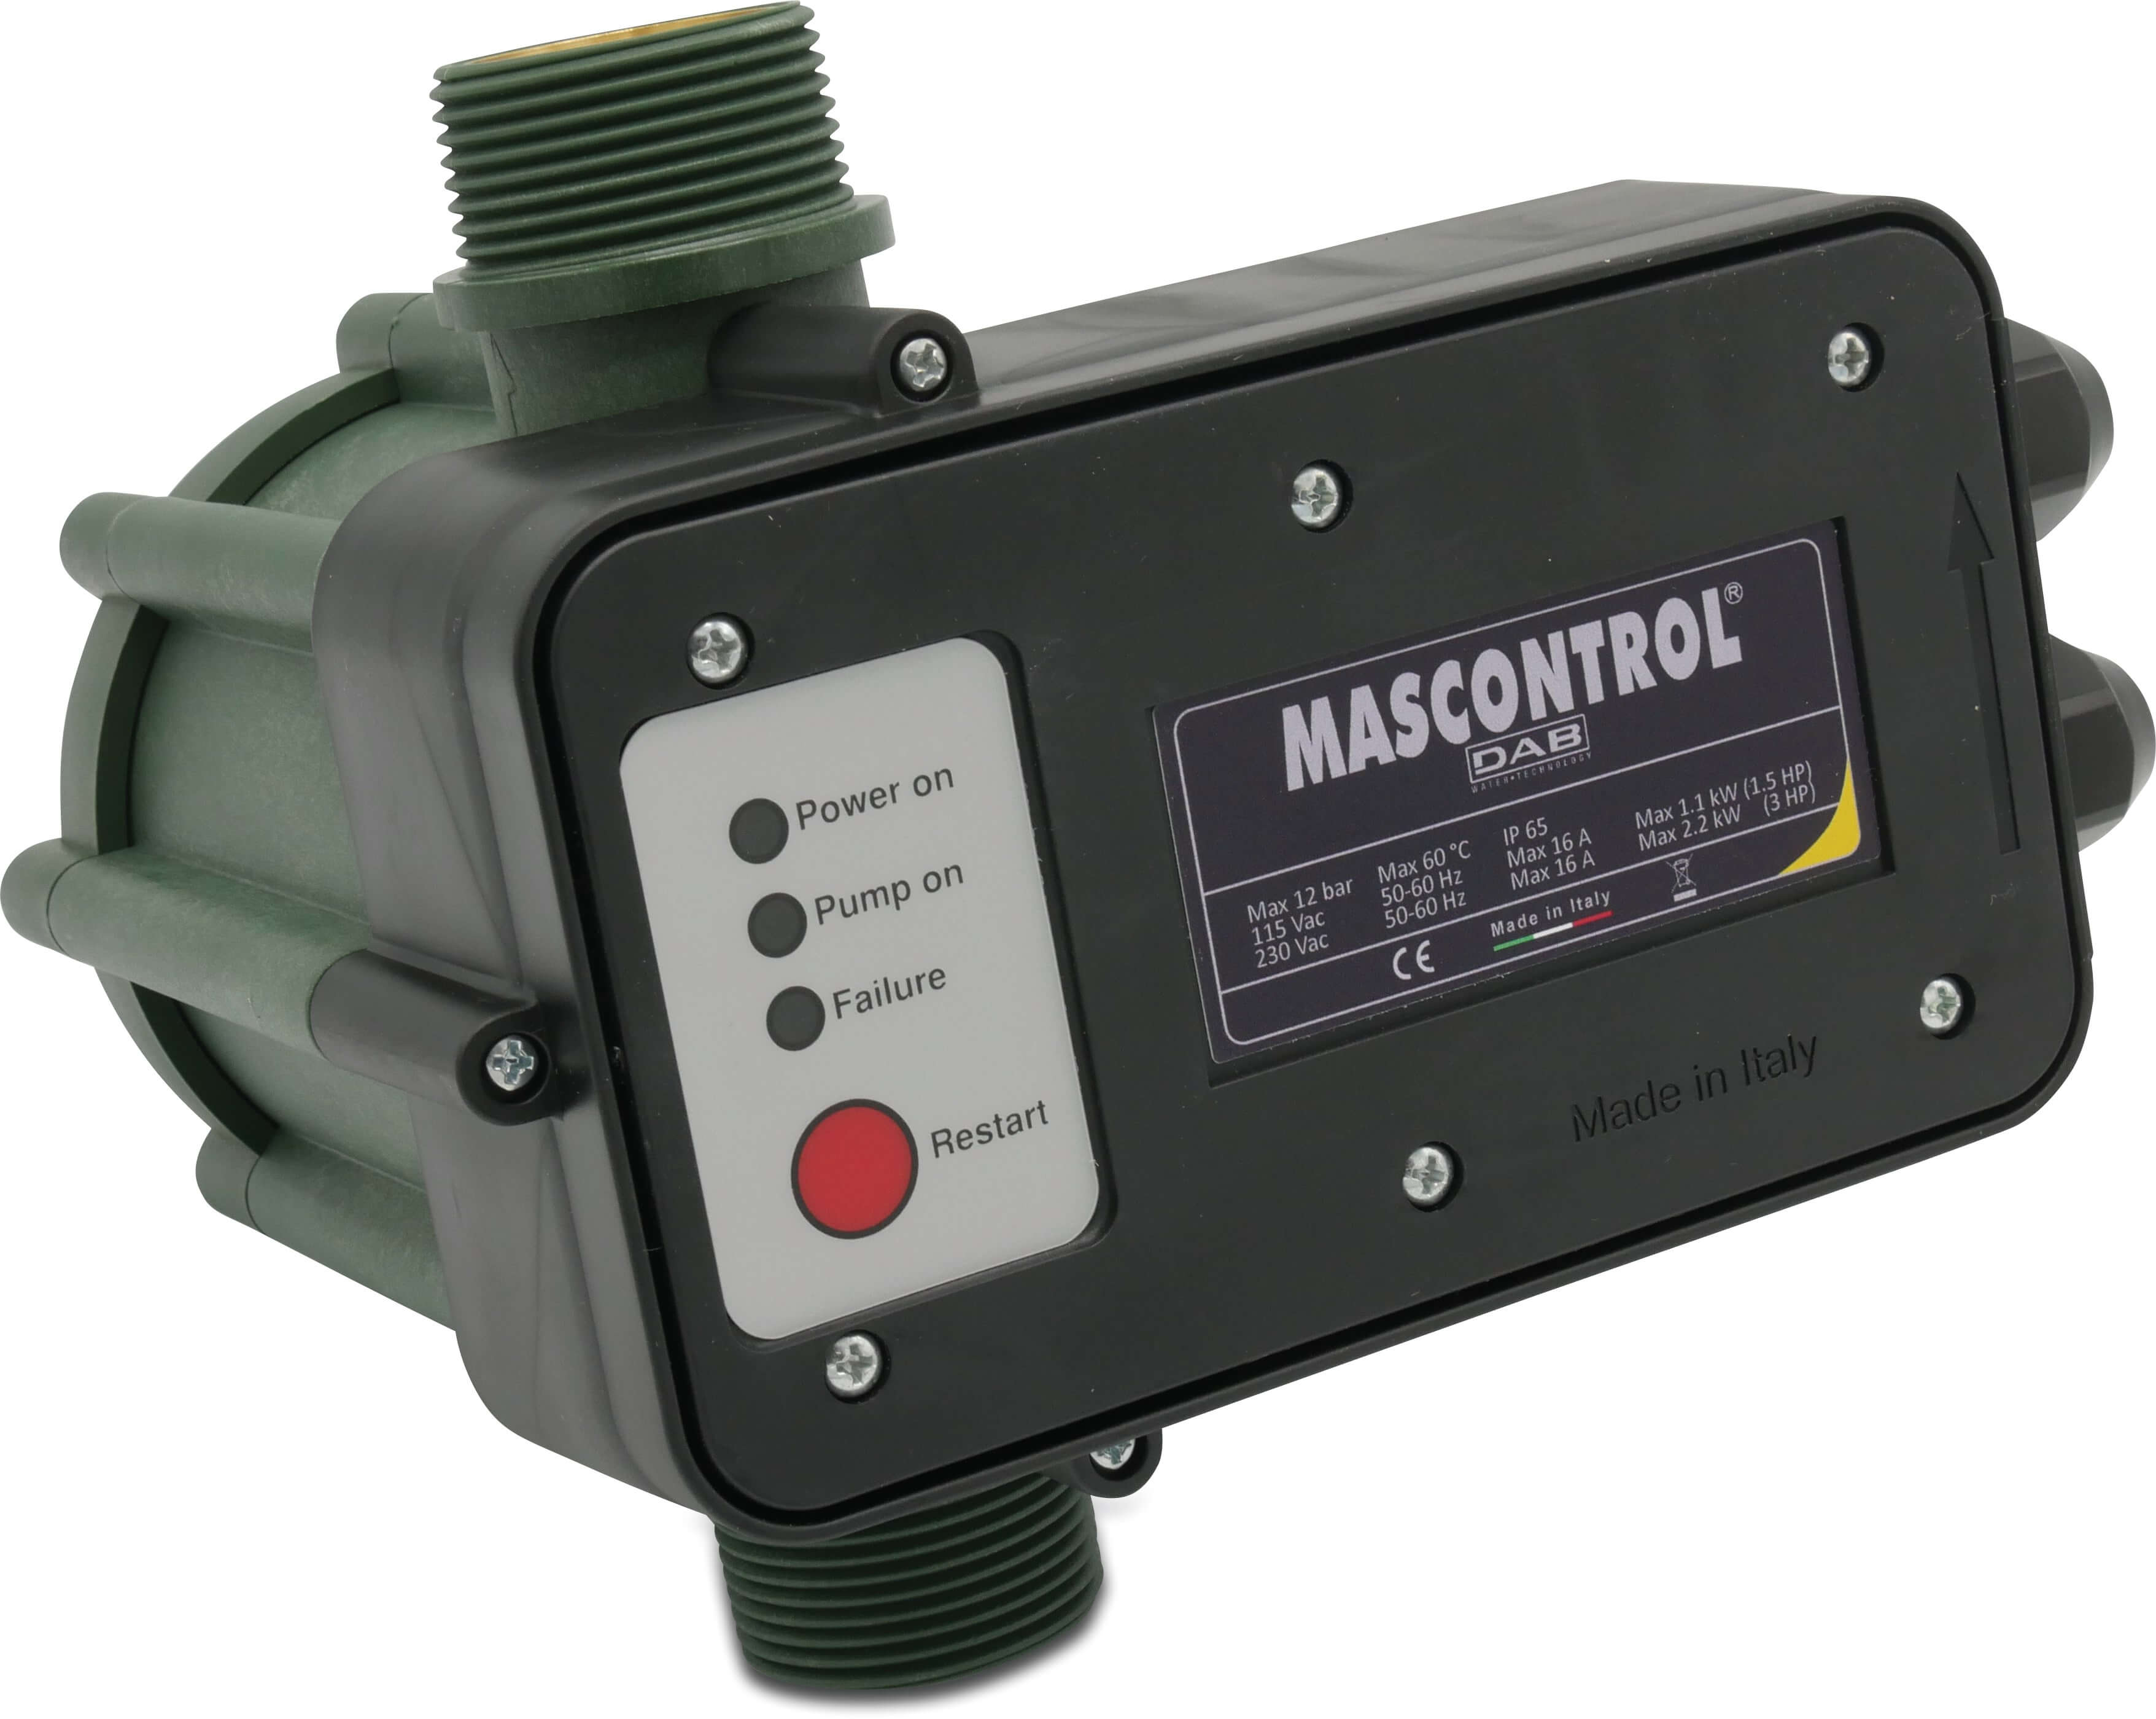 DAB Tryckkontroll torrkörningsskydd 1 1/4" utvändig gänga 230VAC grön type Mas Control utan kabel